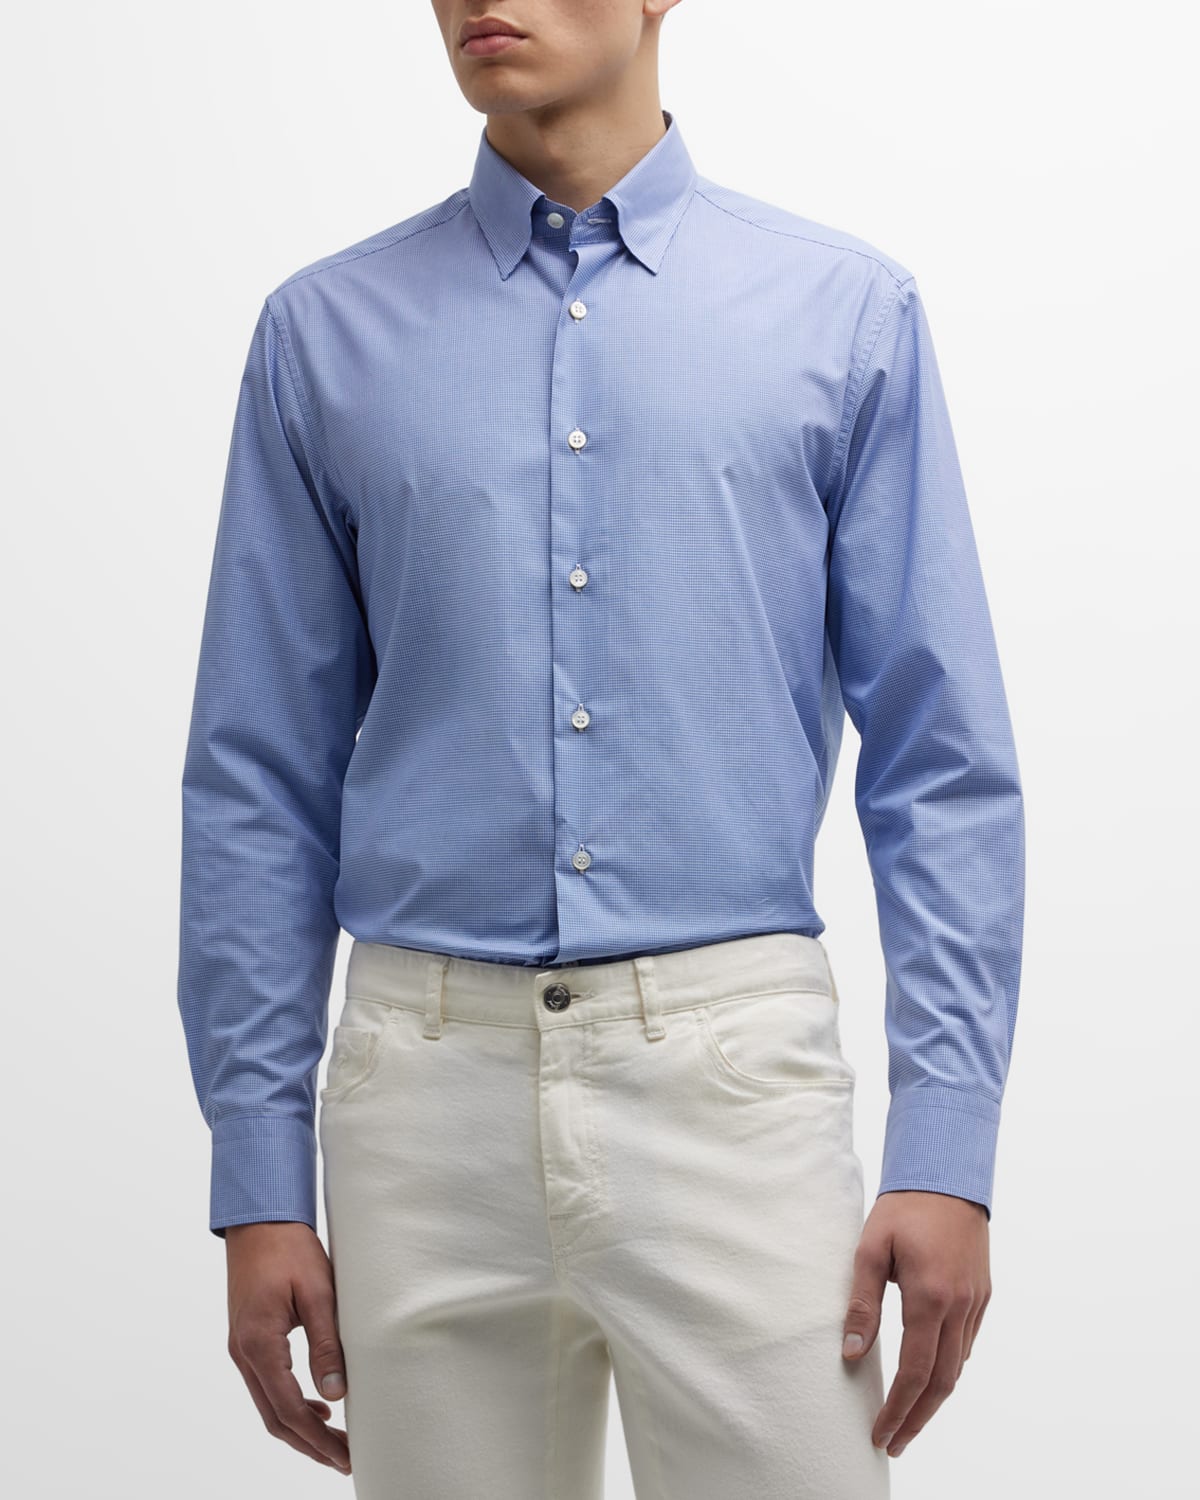 Men's Micro-Plaid Cotton Sport Shirt